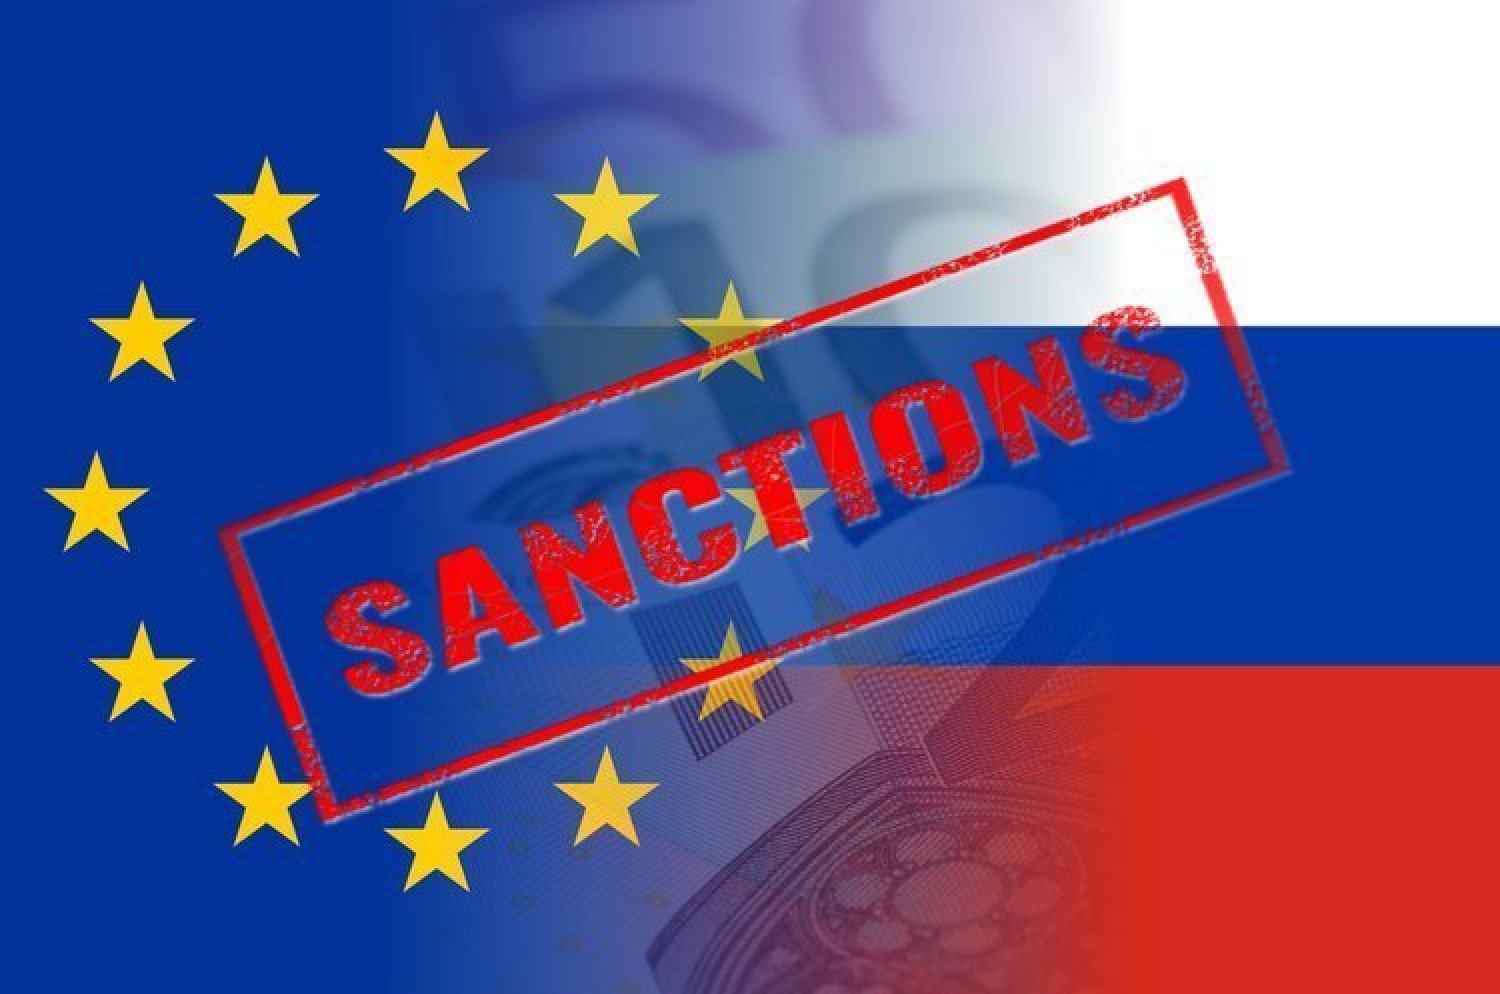 Євросоюз розпочав підготовку сьомого пакету санкцій щодо росії. Можуть торкнутися газу та Газпромбанку, а також конфіскації активів - Meduza